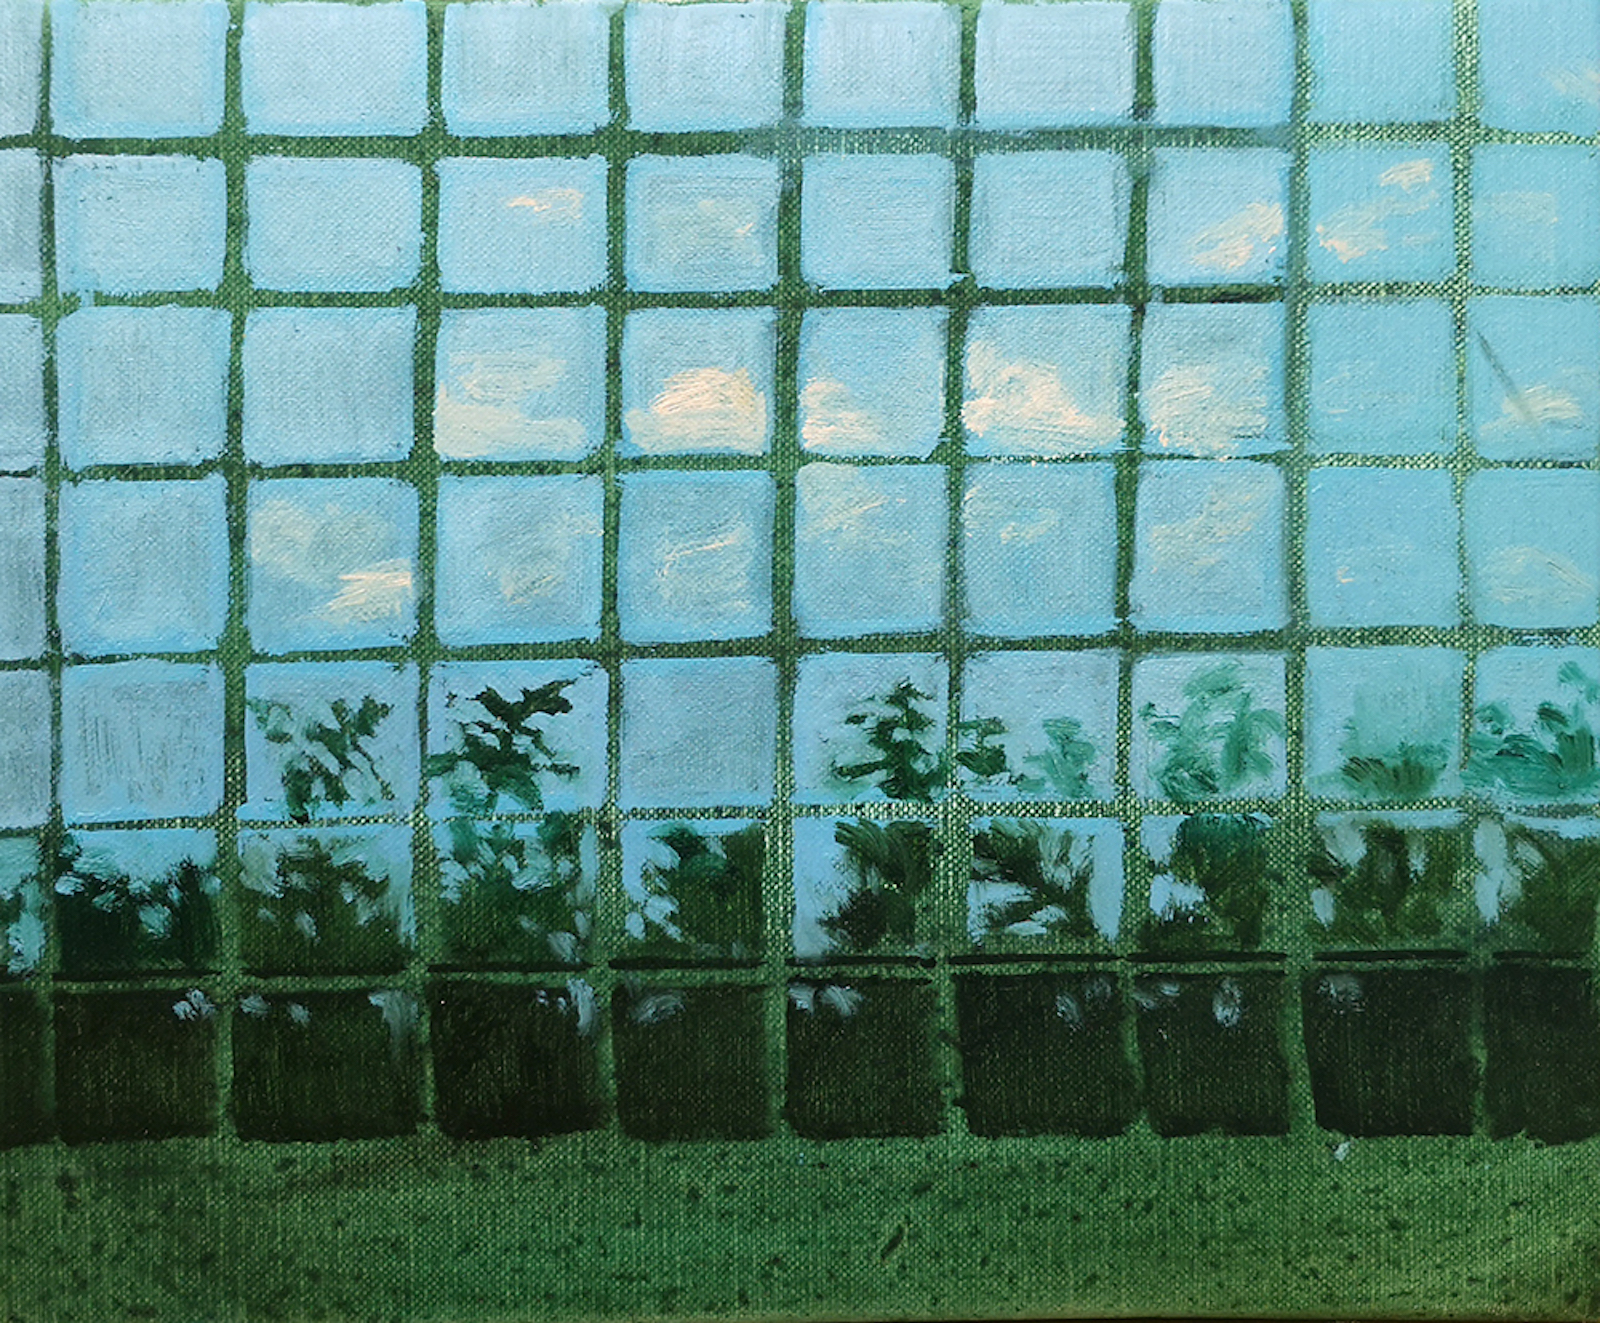 Window wall, 2019